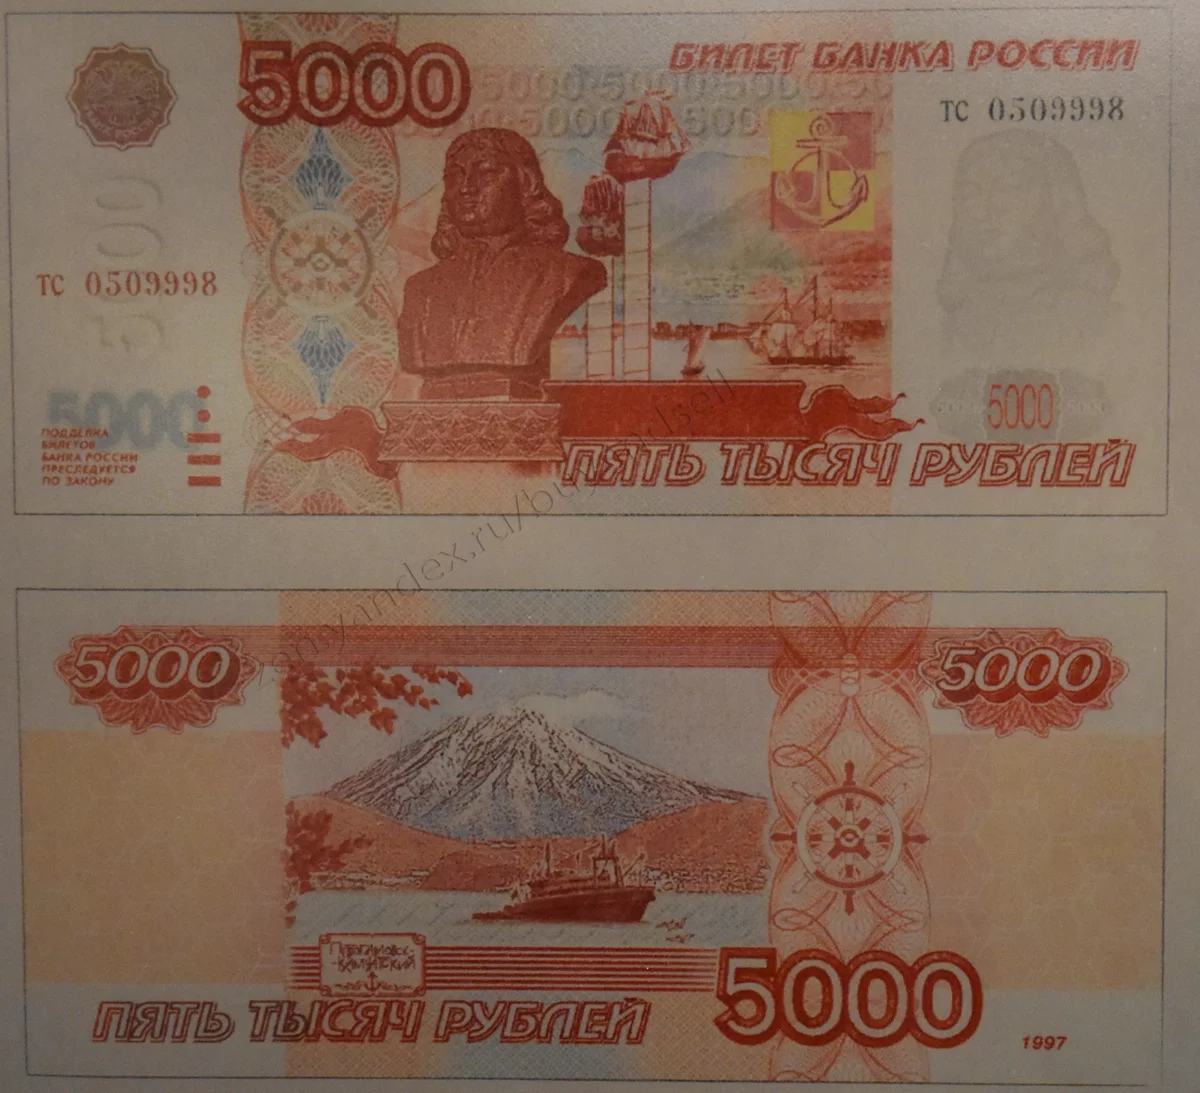 1000 5000 3 1000. 5000 Рублей. Купюра 5000. Российские банкноты 5000 рублей. Старая пятитысячная купюра.